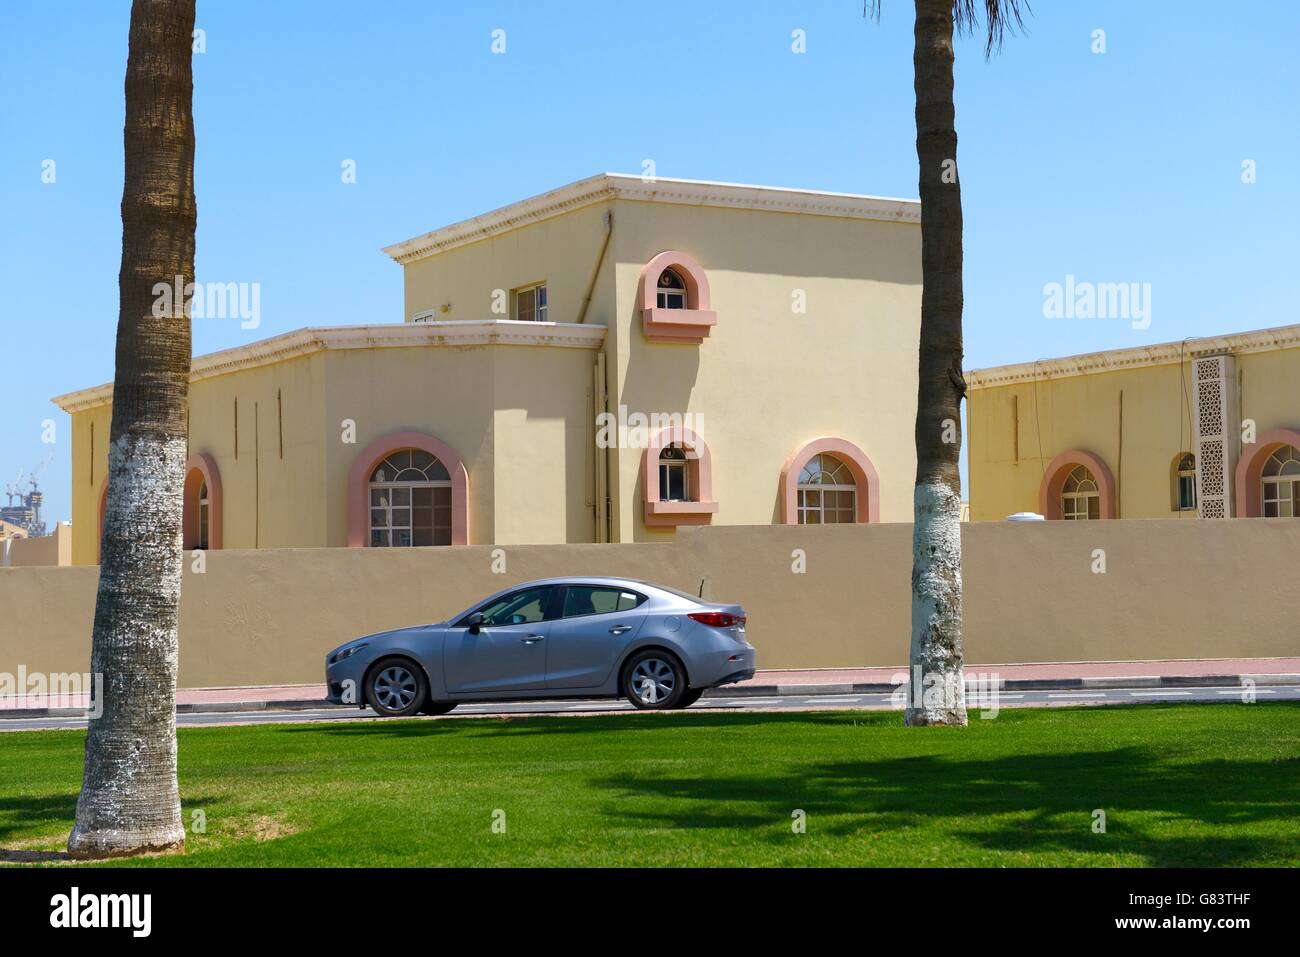 Sich rasch entwickelnden neuen Stadt lusail, Katar. Eine von vielen privaten Wohnungen Häuser Wohnungen in der West Bay und Marina Bezirke Stockfoto